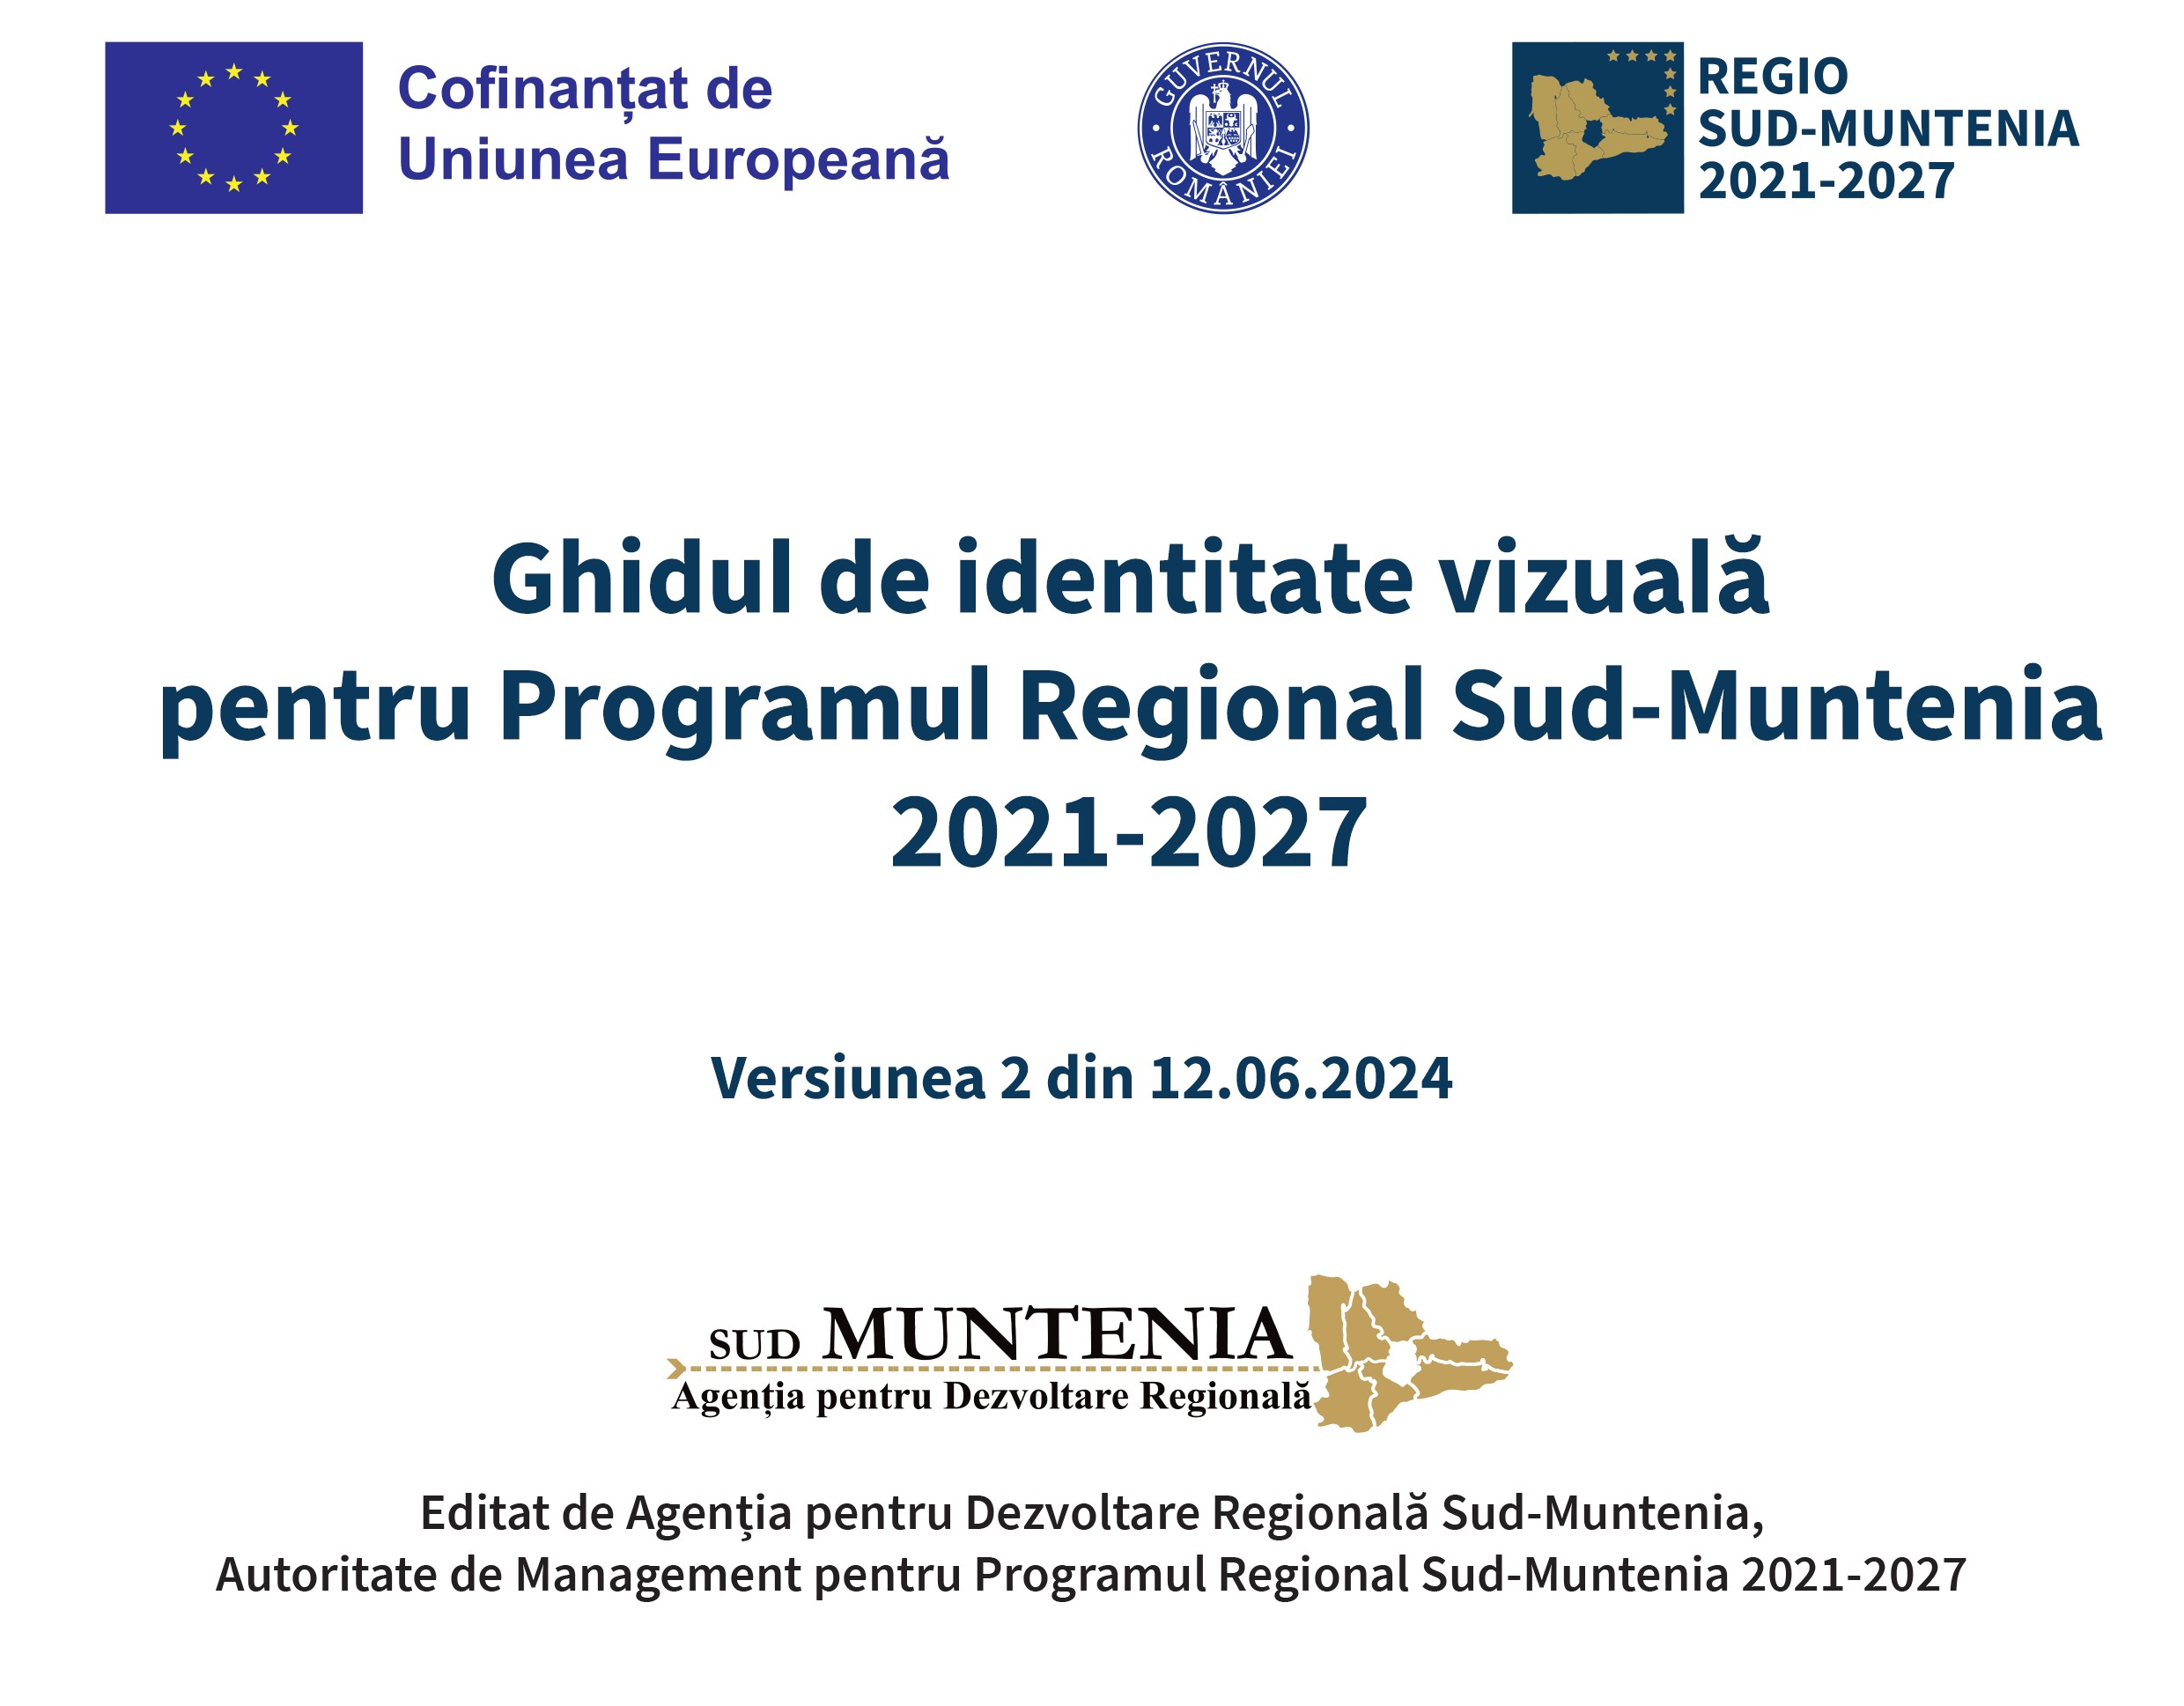 Ghidul de identitate vizuală pentru Programul Regional Sud-Muntenia 2021-2027, a fost actualizat